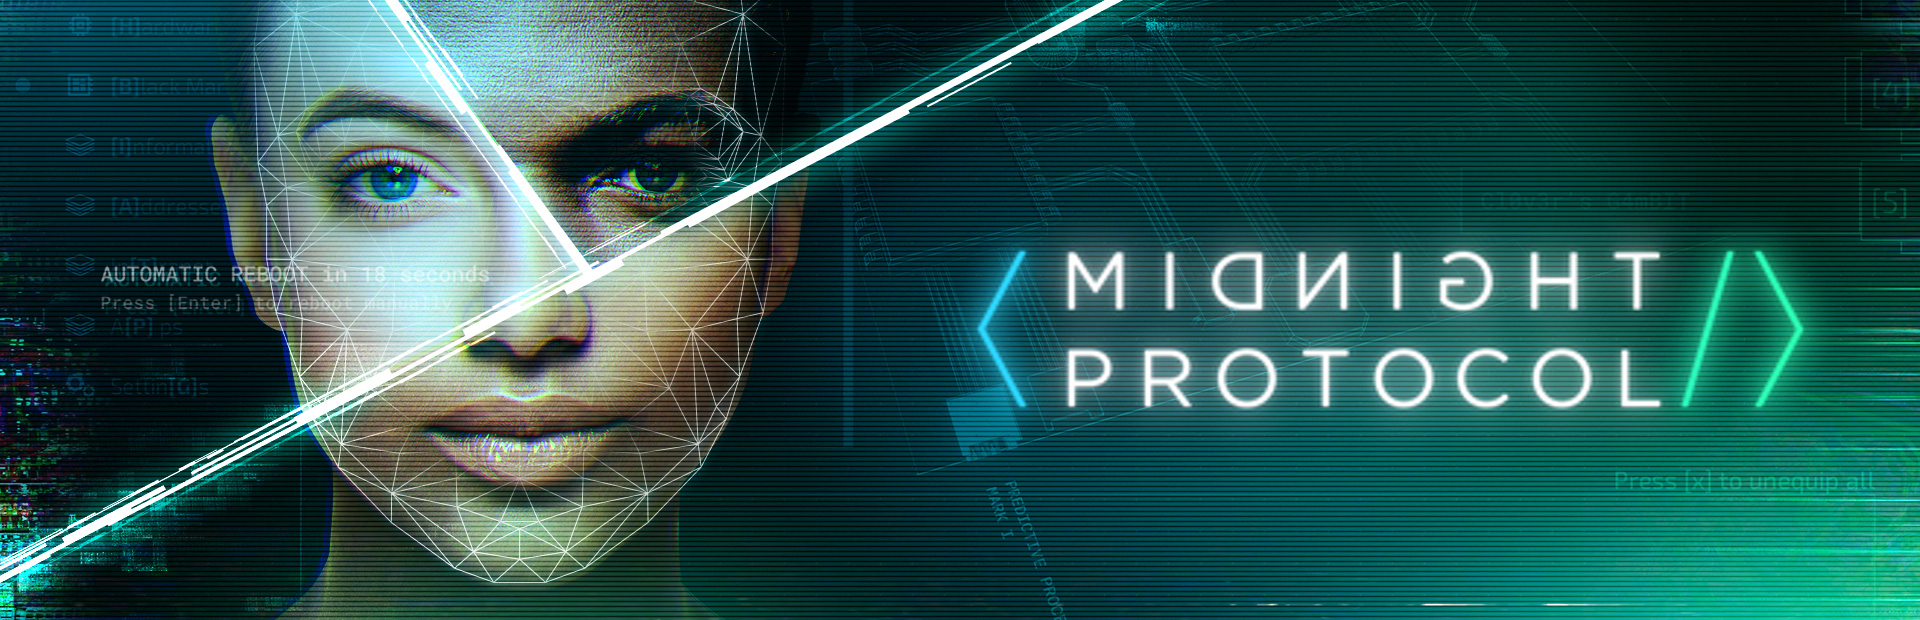 دانلود بازی Midnight Protocol برای PC | گیمباتو